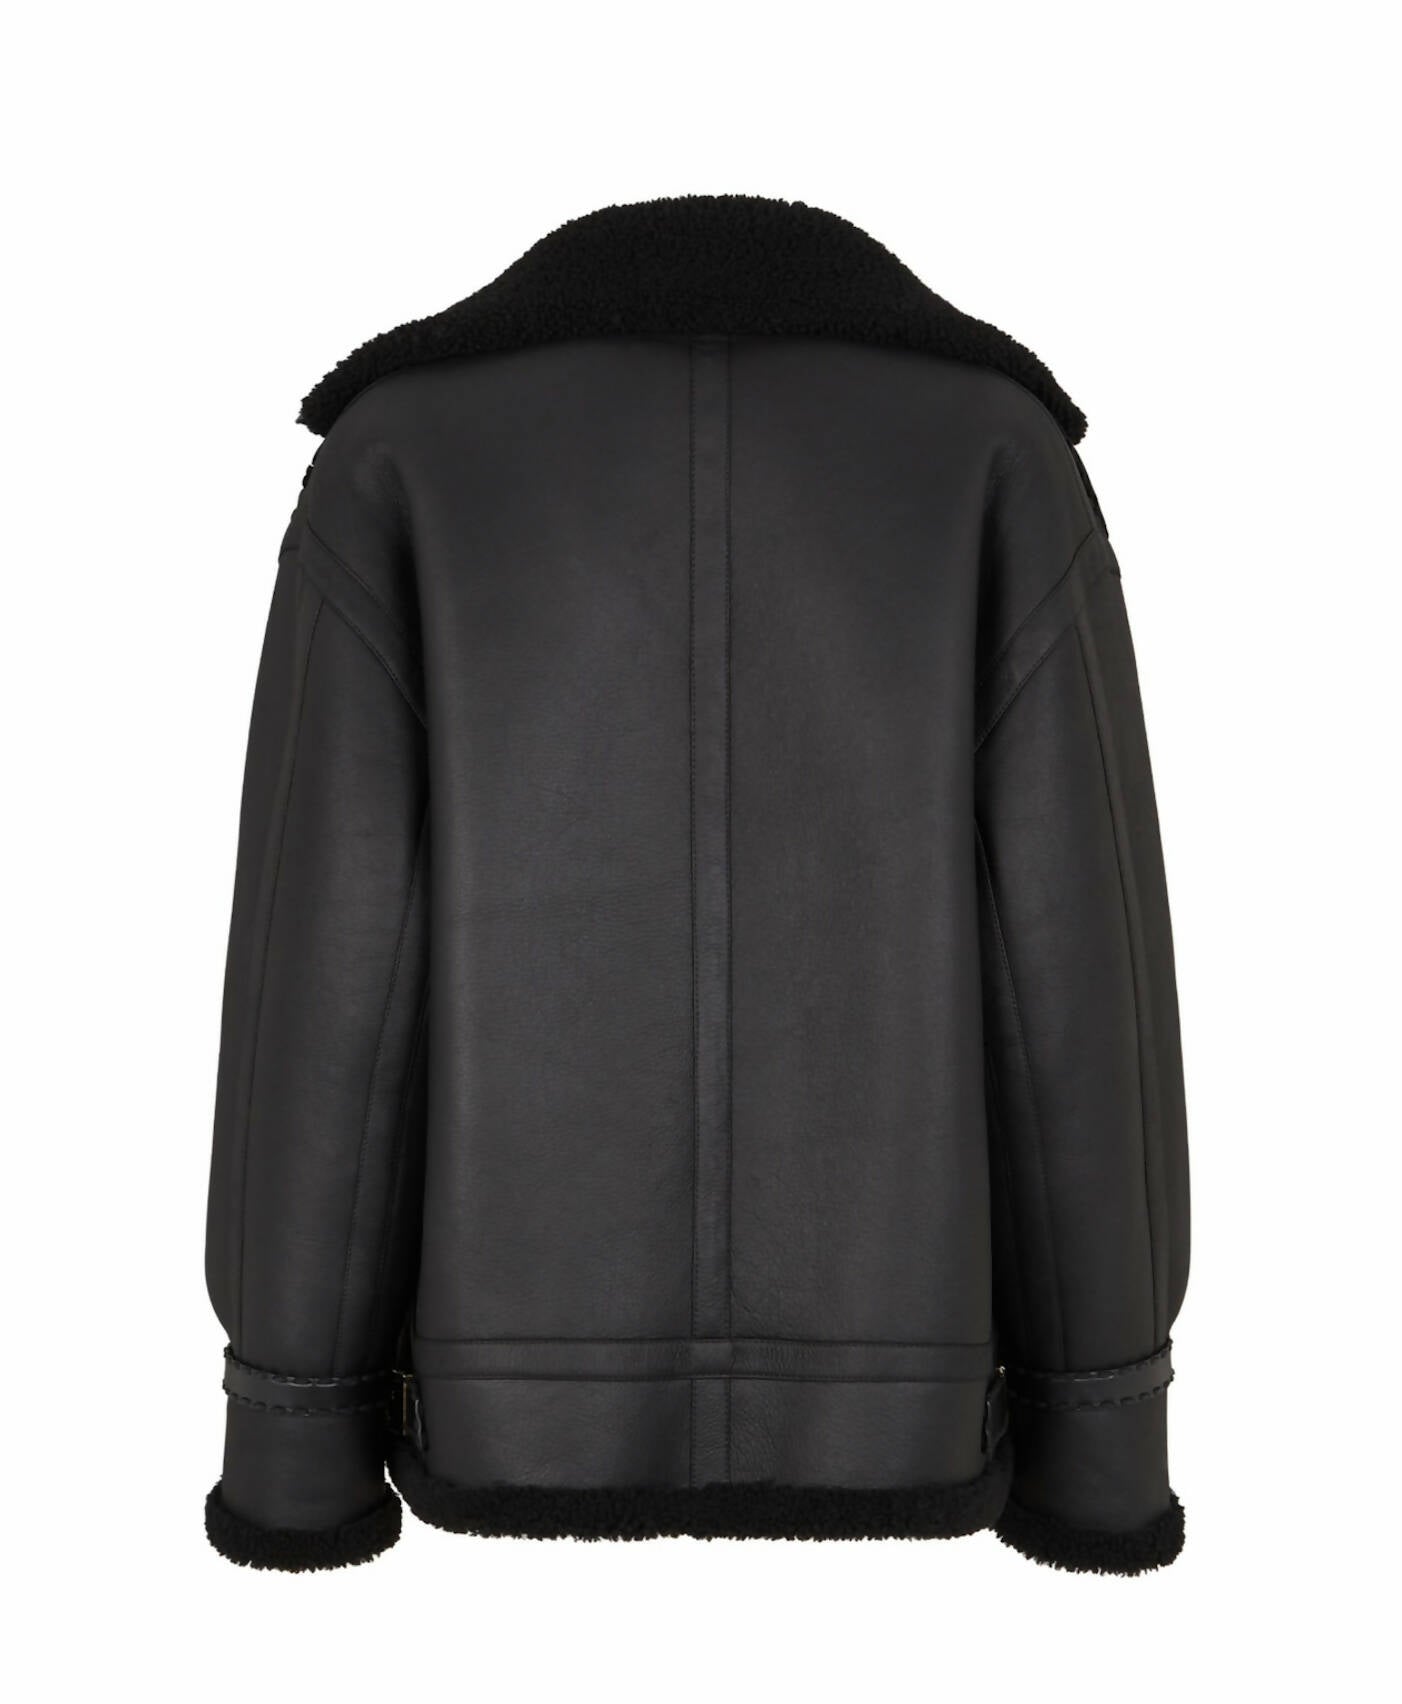 Fendi Jacket Black shearling jacket